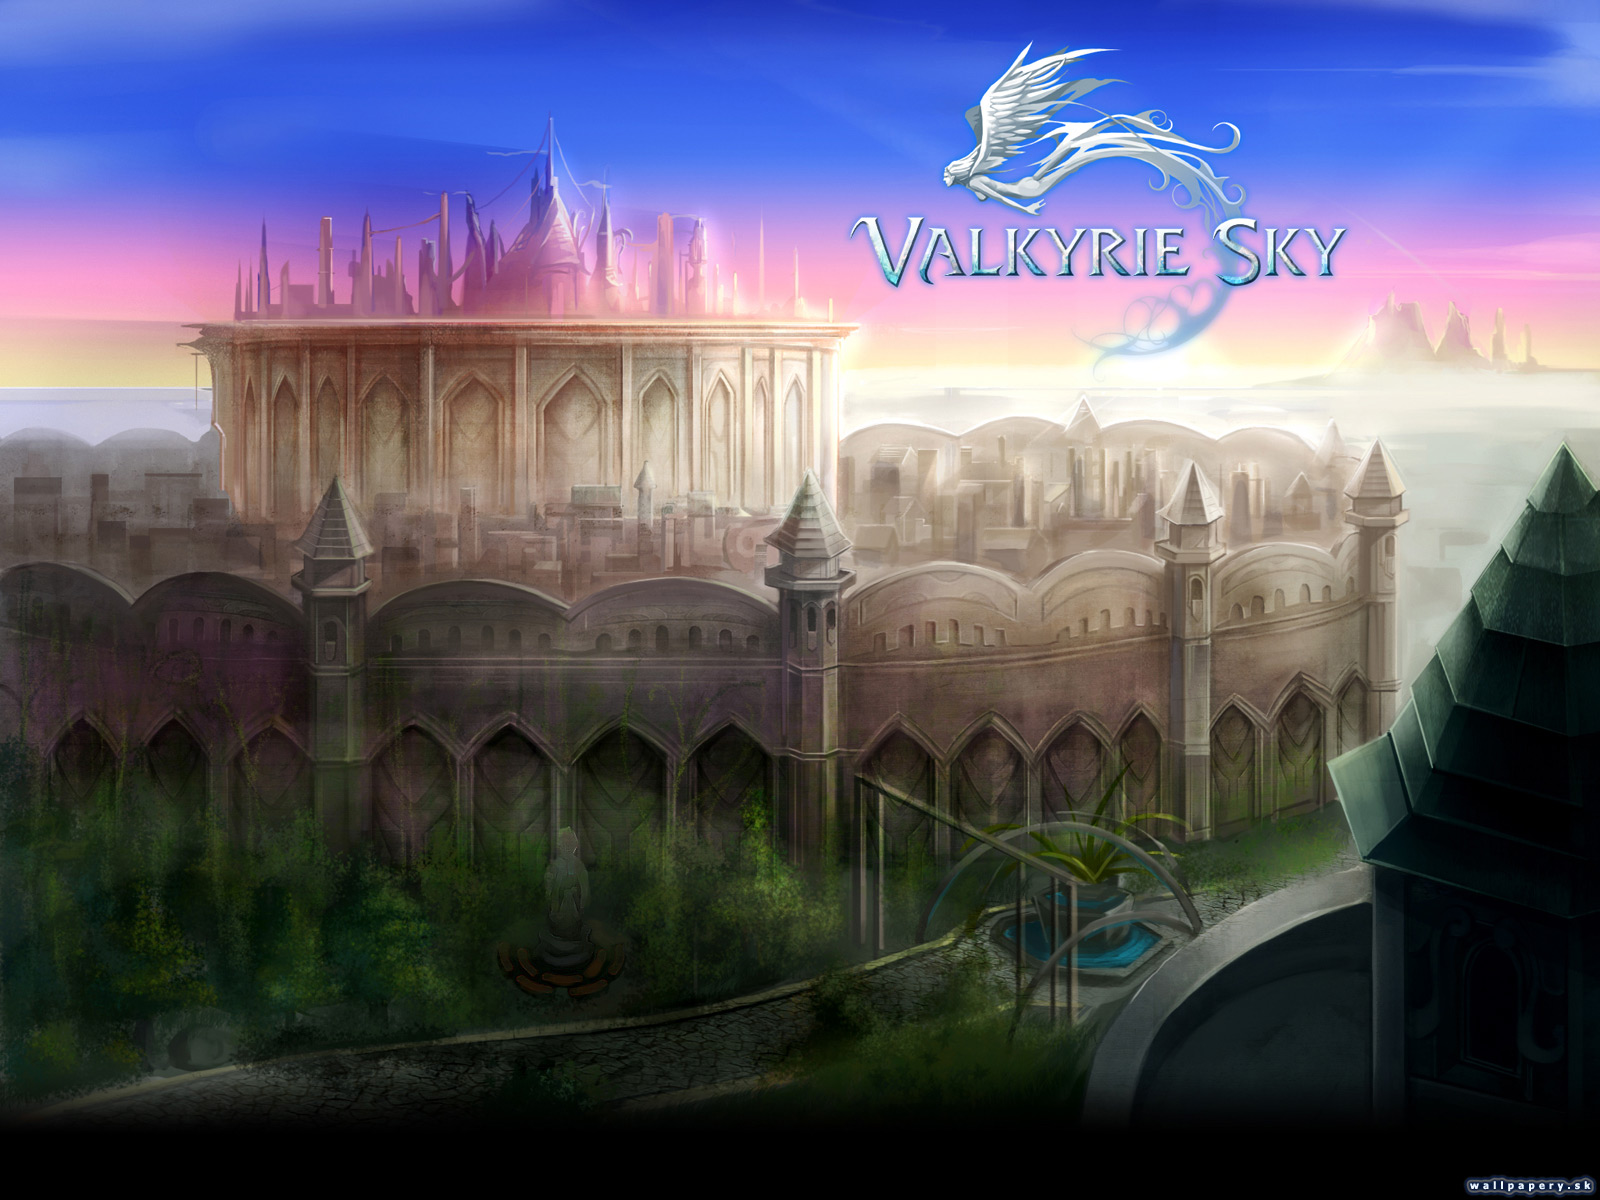 Valkyrie Sky - wallpaper 13